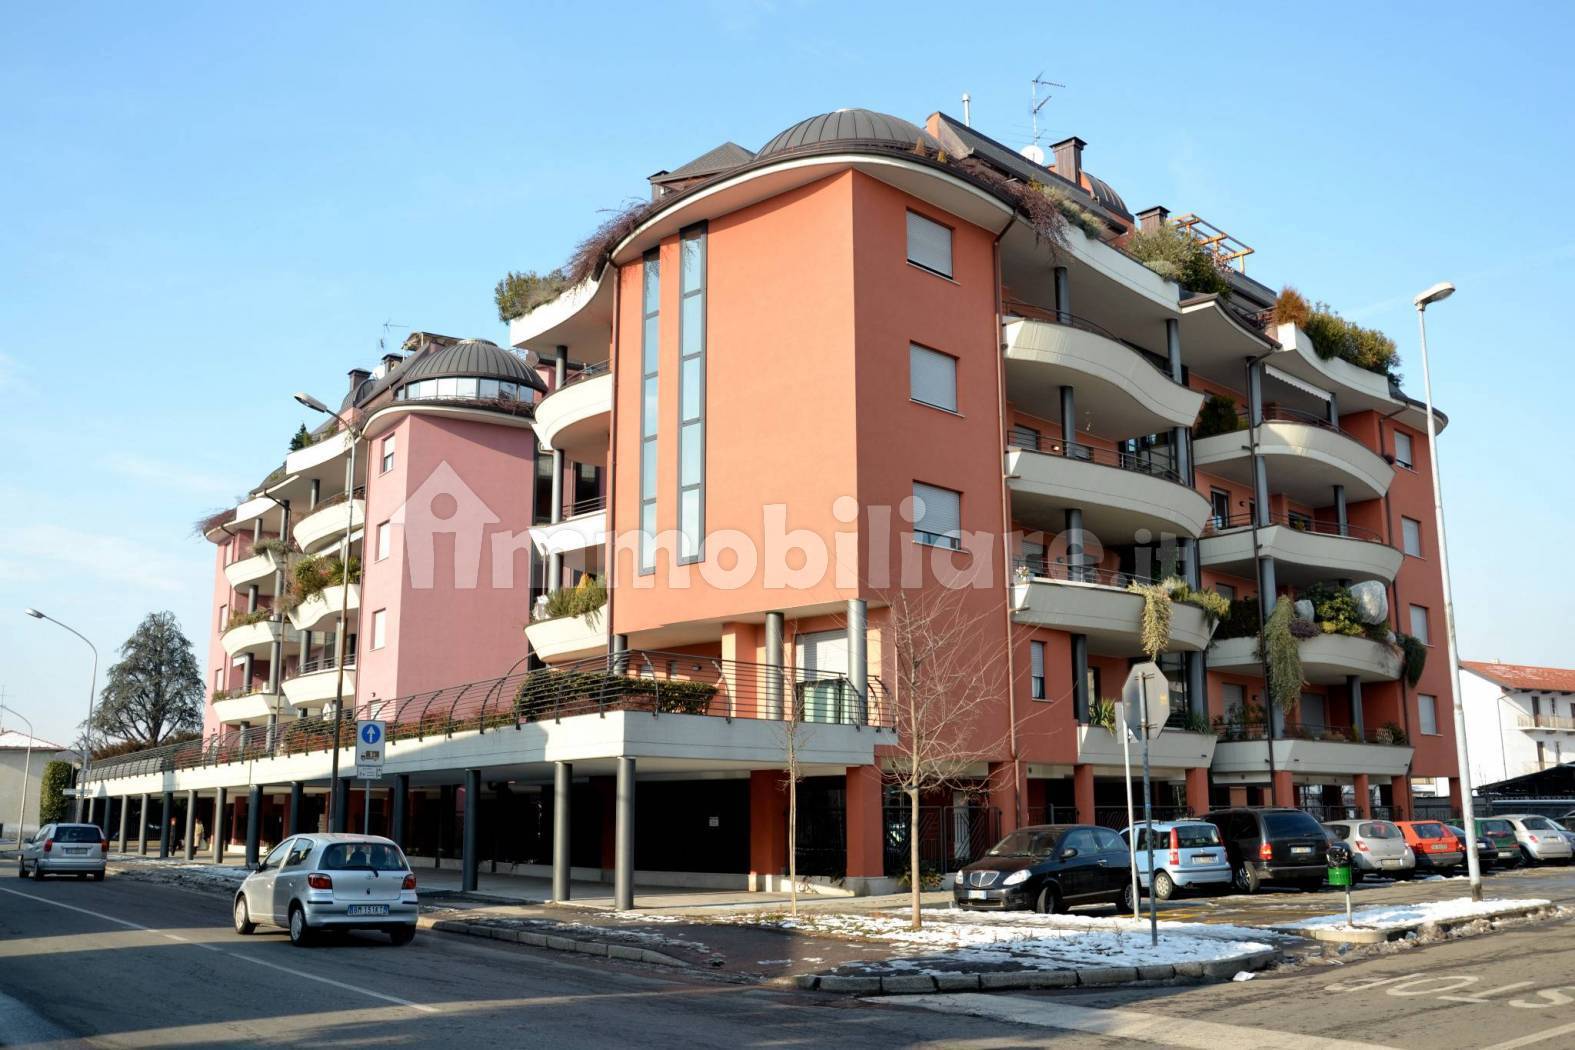 Appartamento in affitto a Busto Arsizio, 3 locali, zona dale, prezzo € 750 | PortaleAgenzieImmobiliari.it